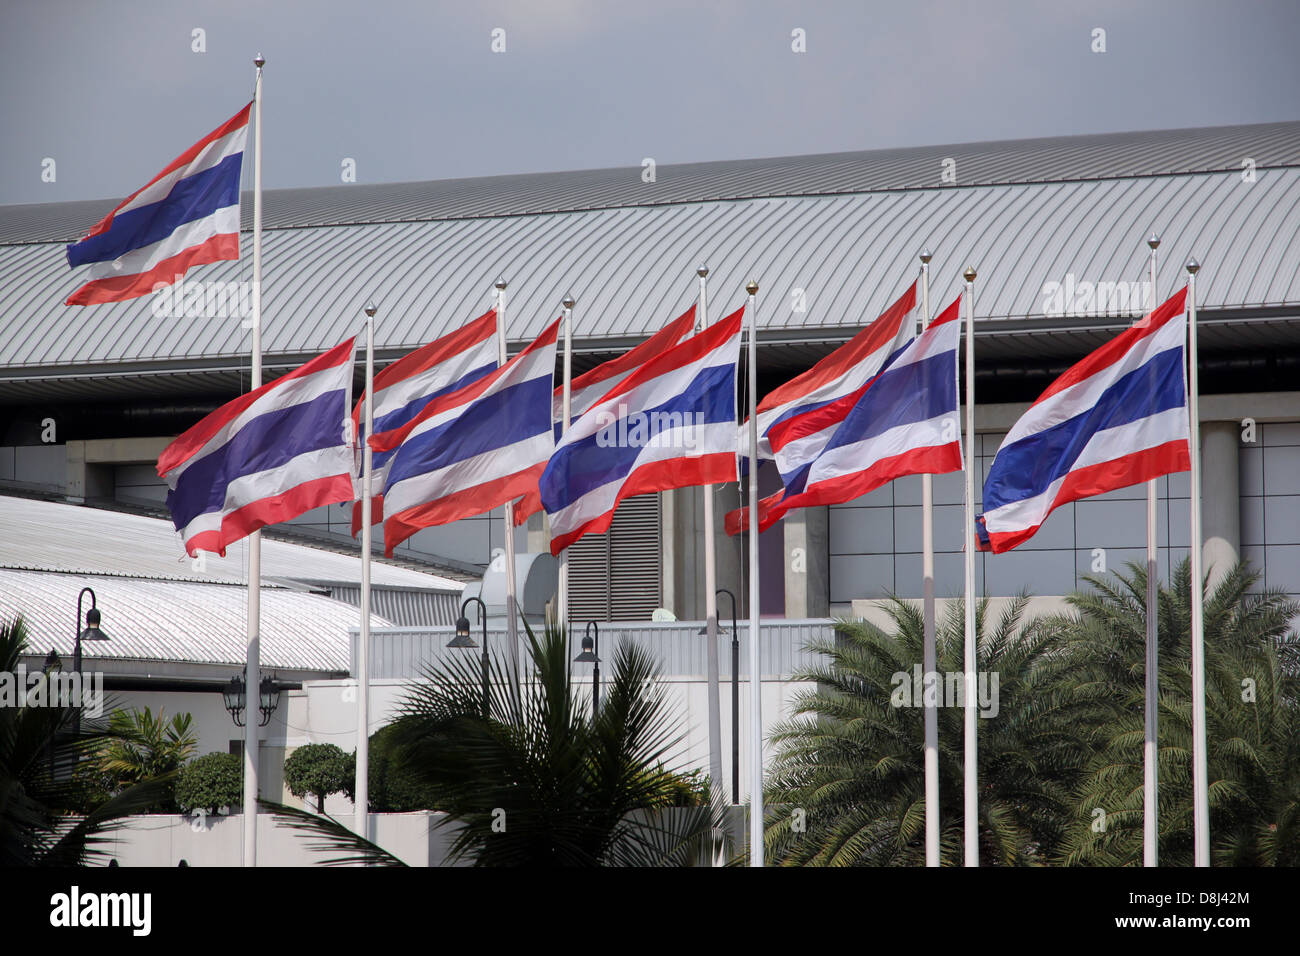 La Bandiera della Thailandia colpita da un forte vento.La bandiera includono è rosso,colori bianco e blu. Foto Stock